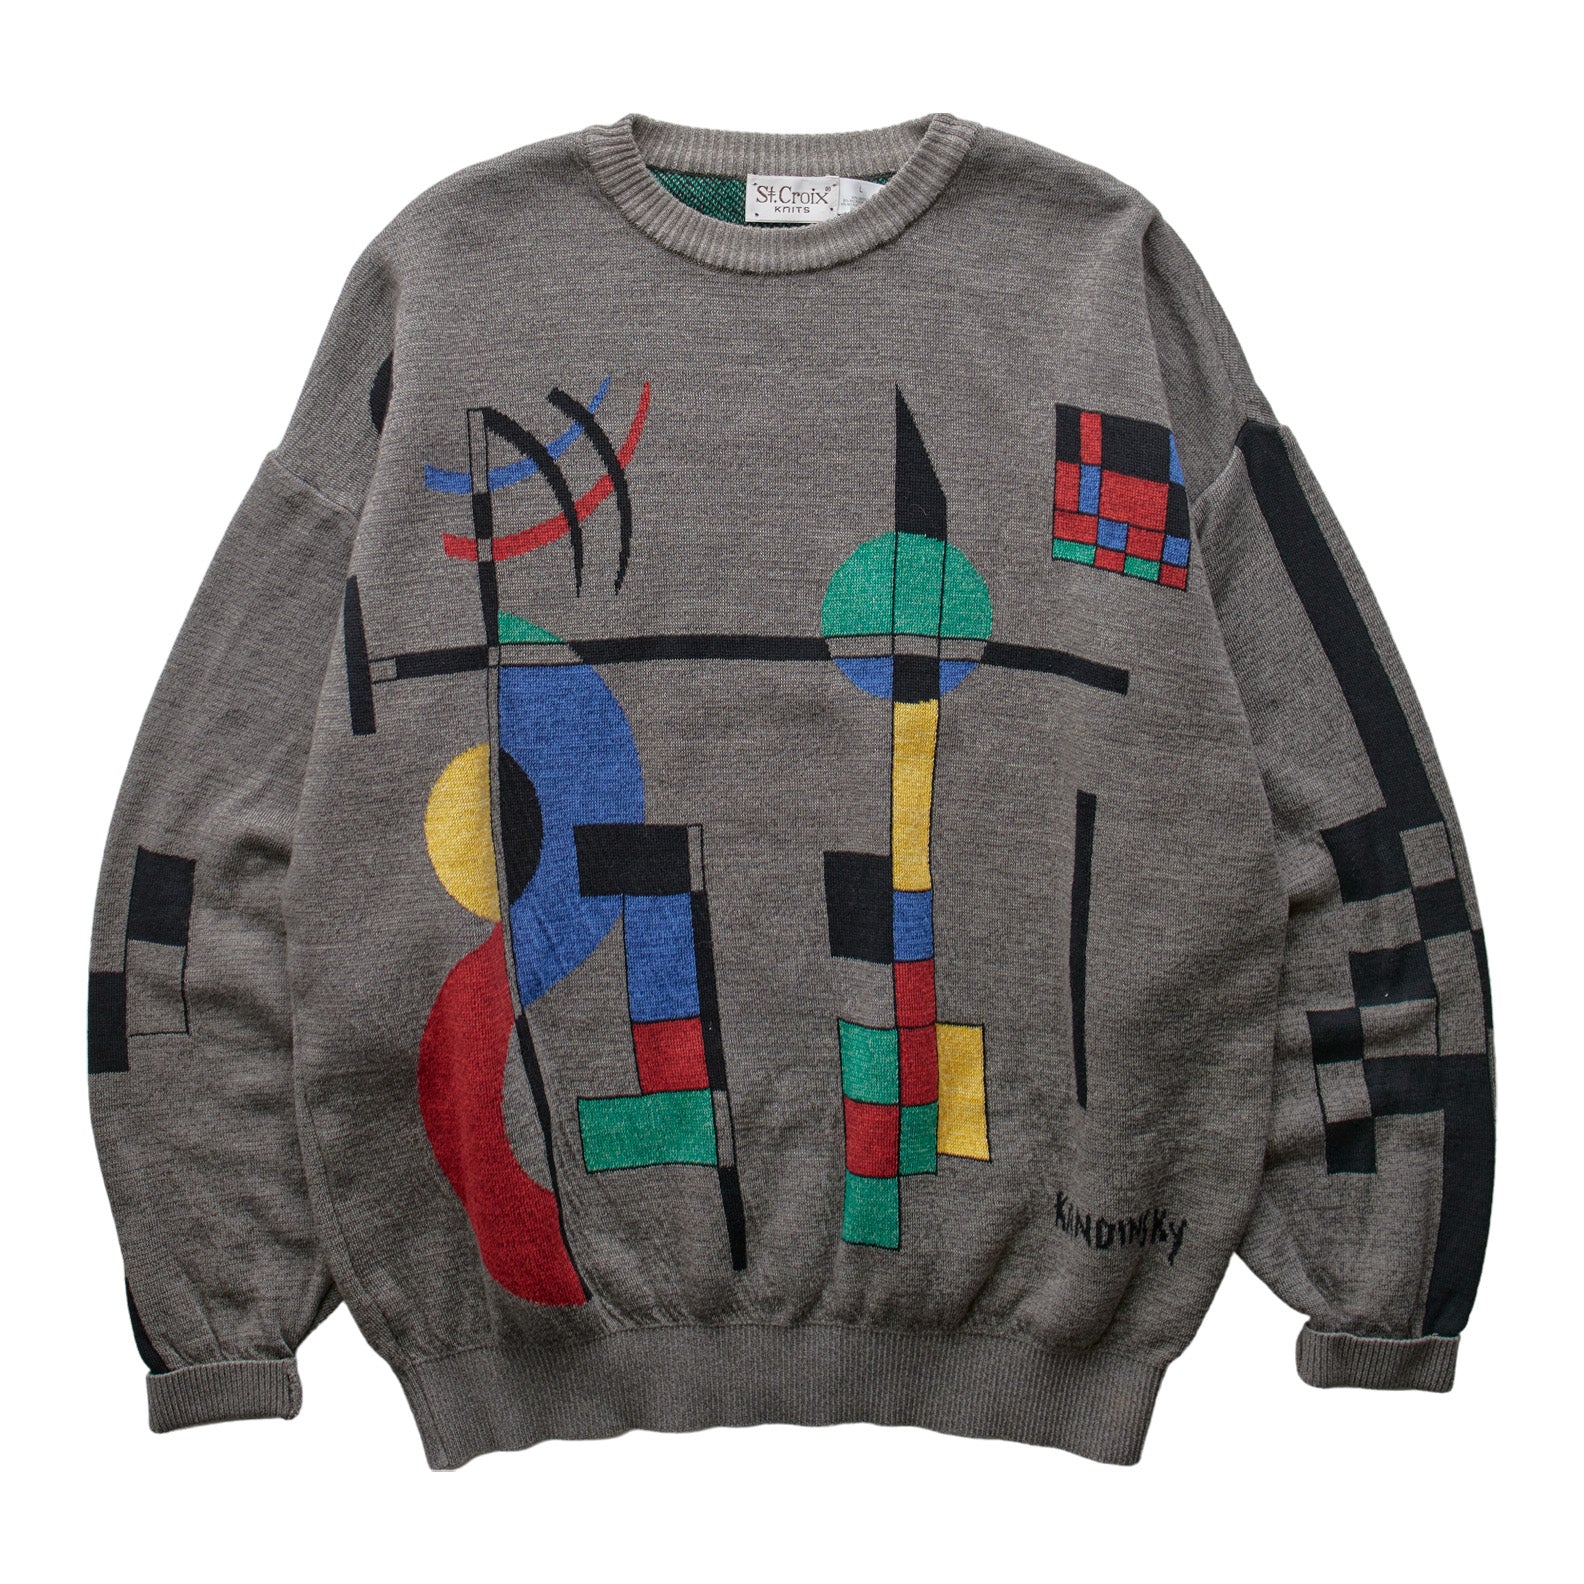 (L) 80s St. Croix Sweater